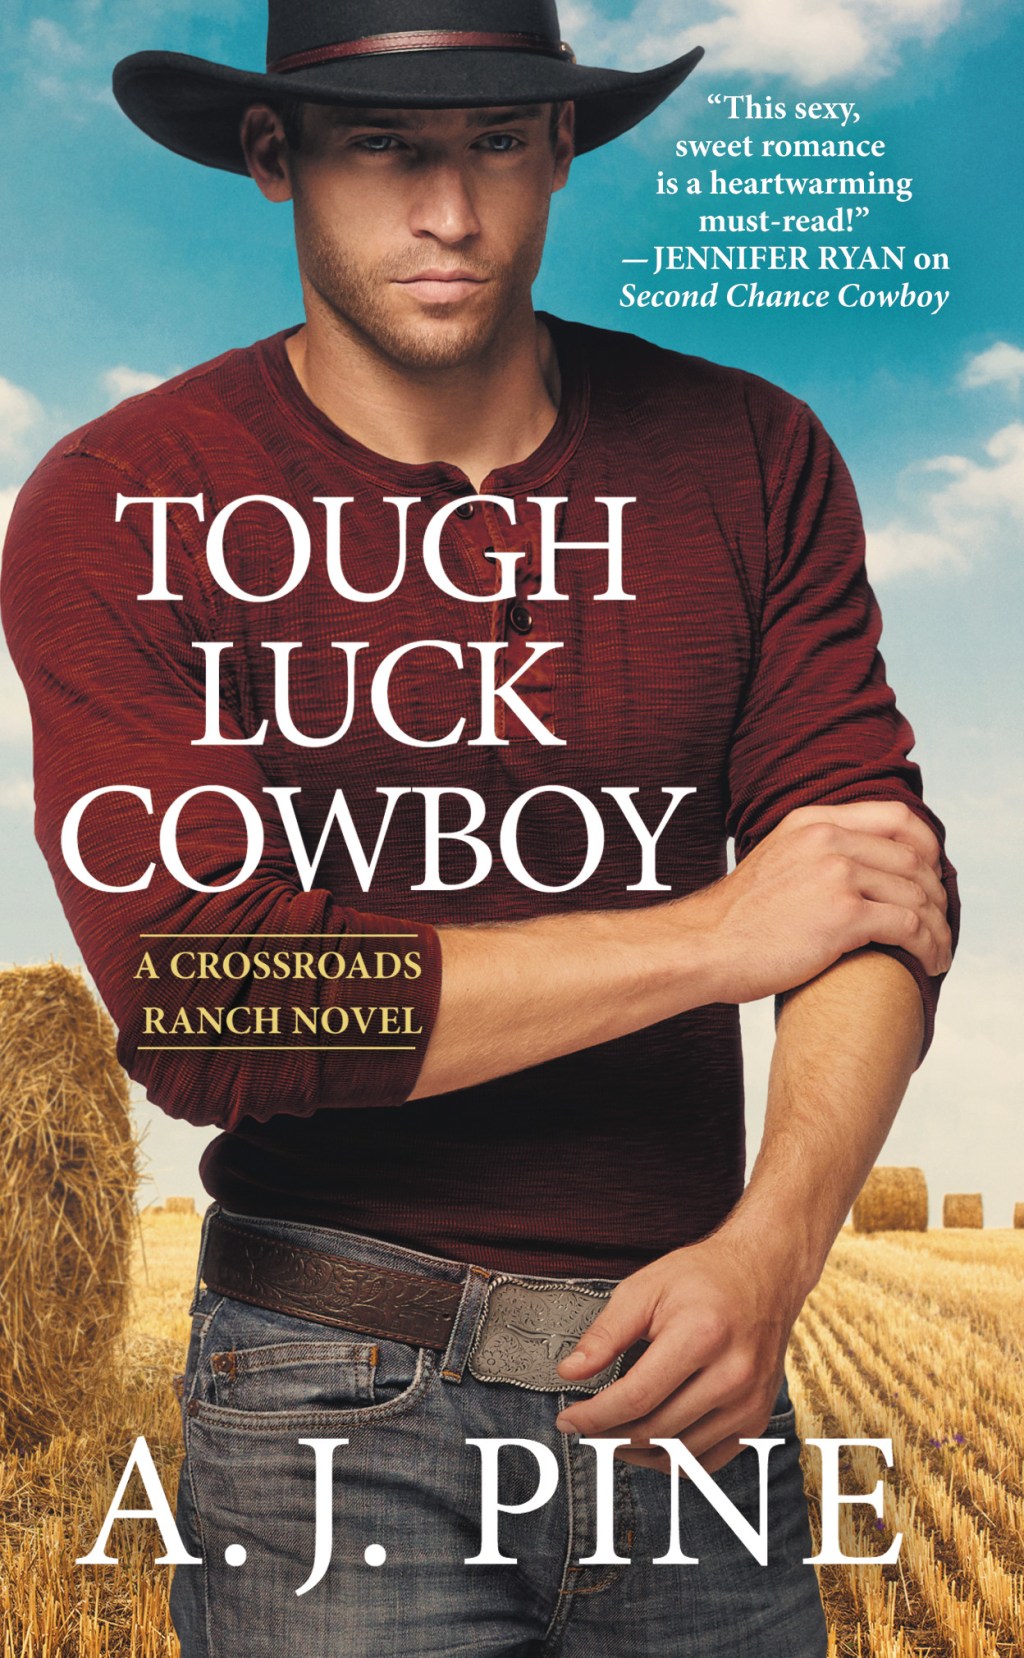 Tough Luck Cowboy by A.J. Pine